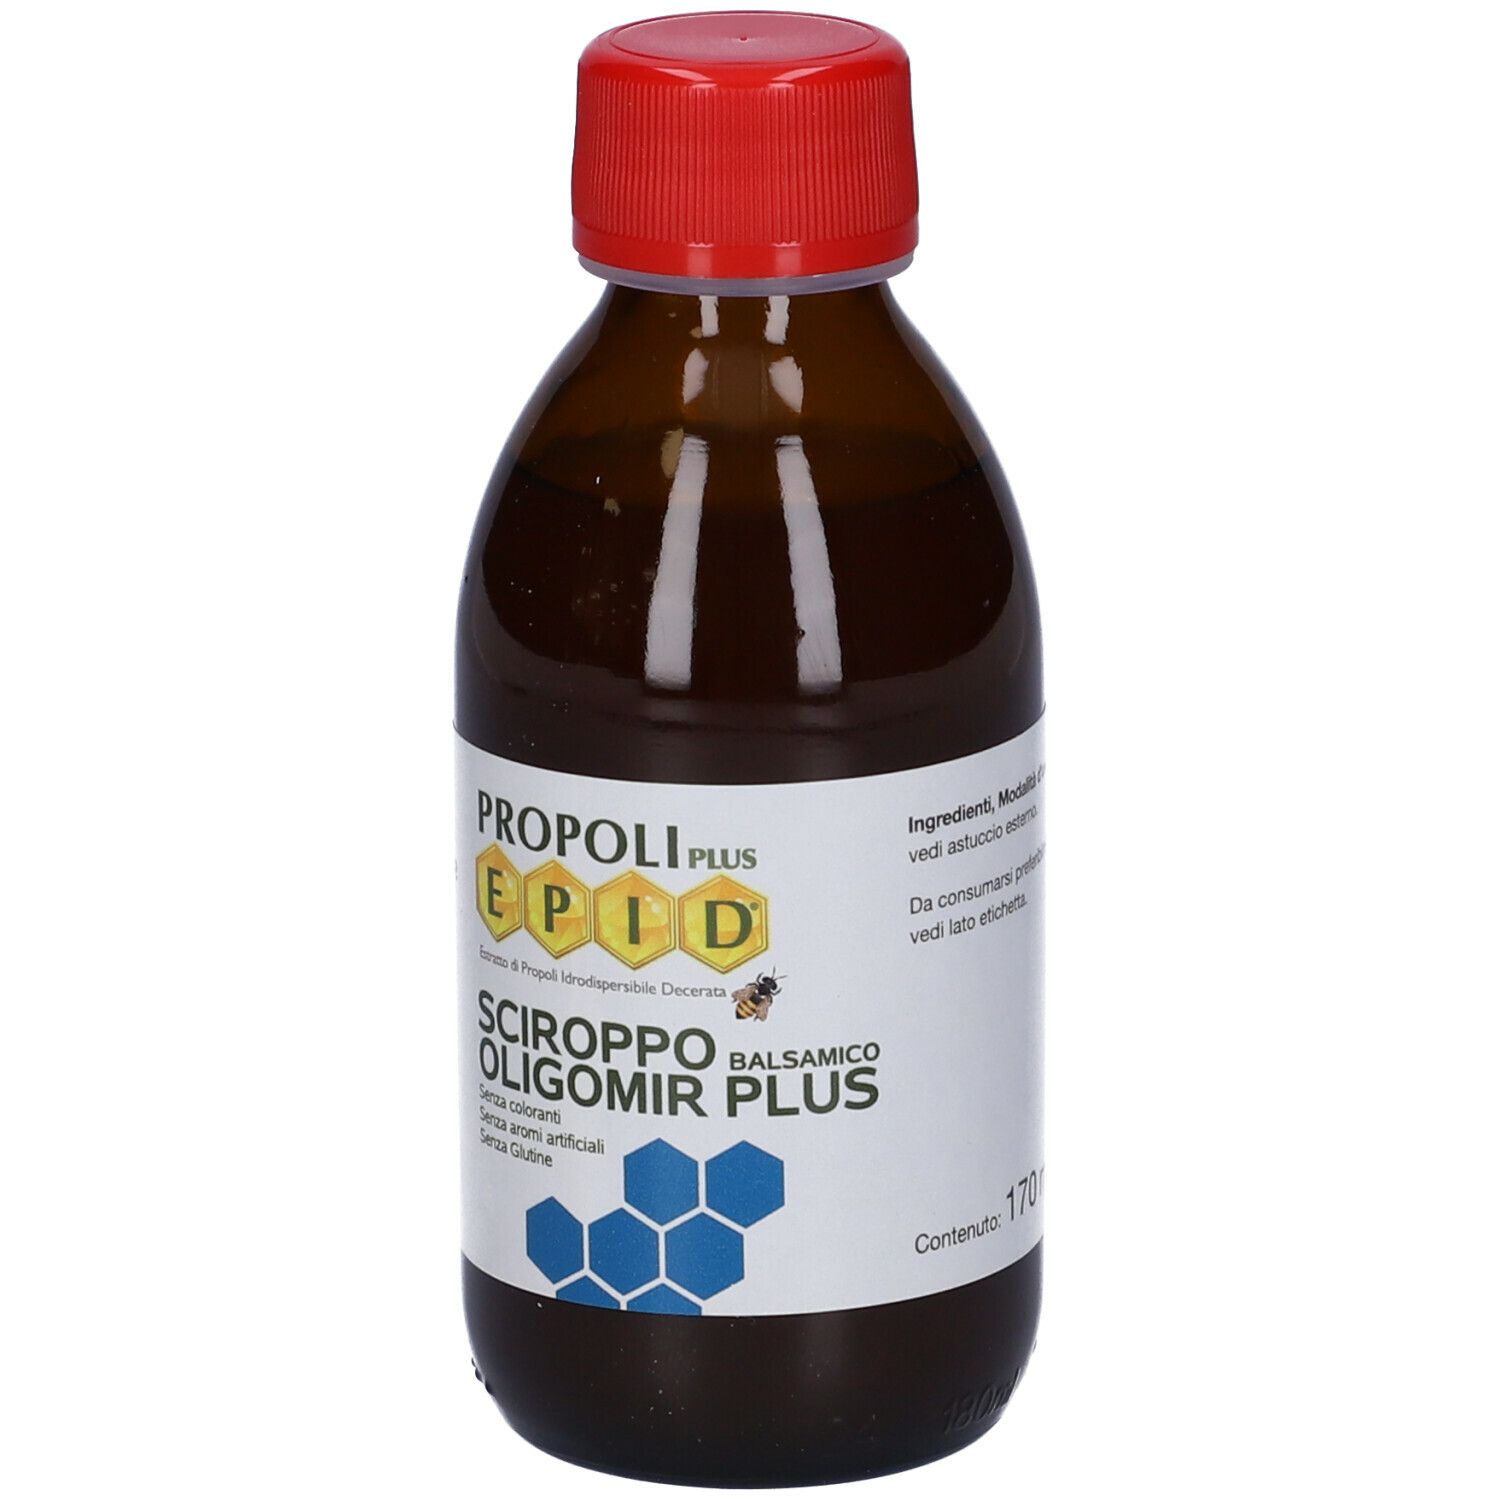 Propoli Plus Epid® Sciroppo Balsamico Oligomir Plus